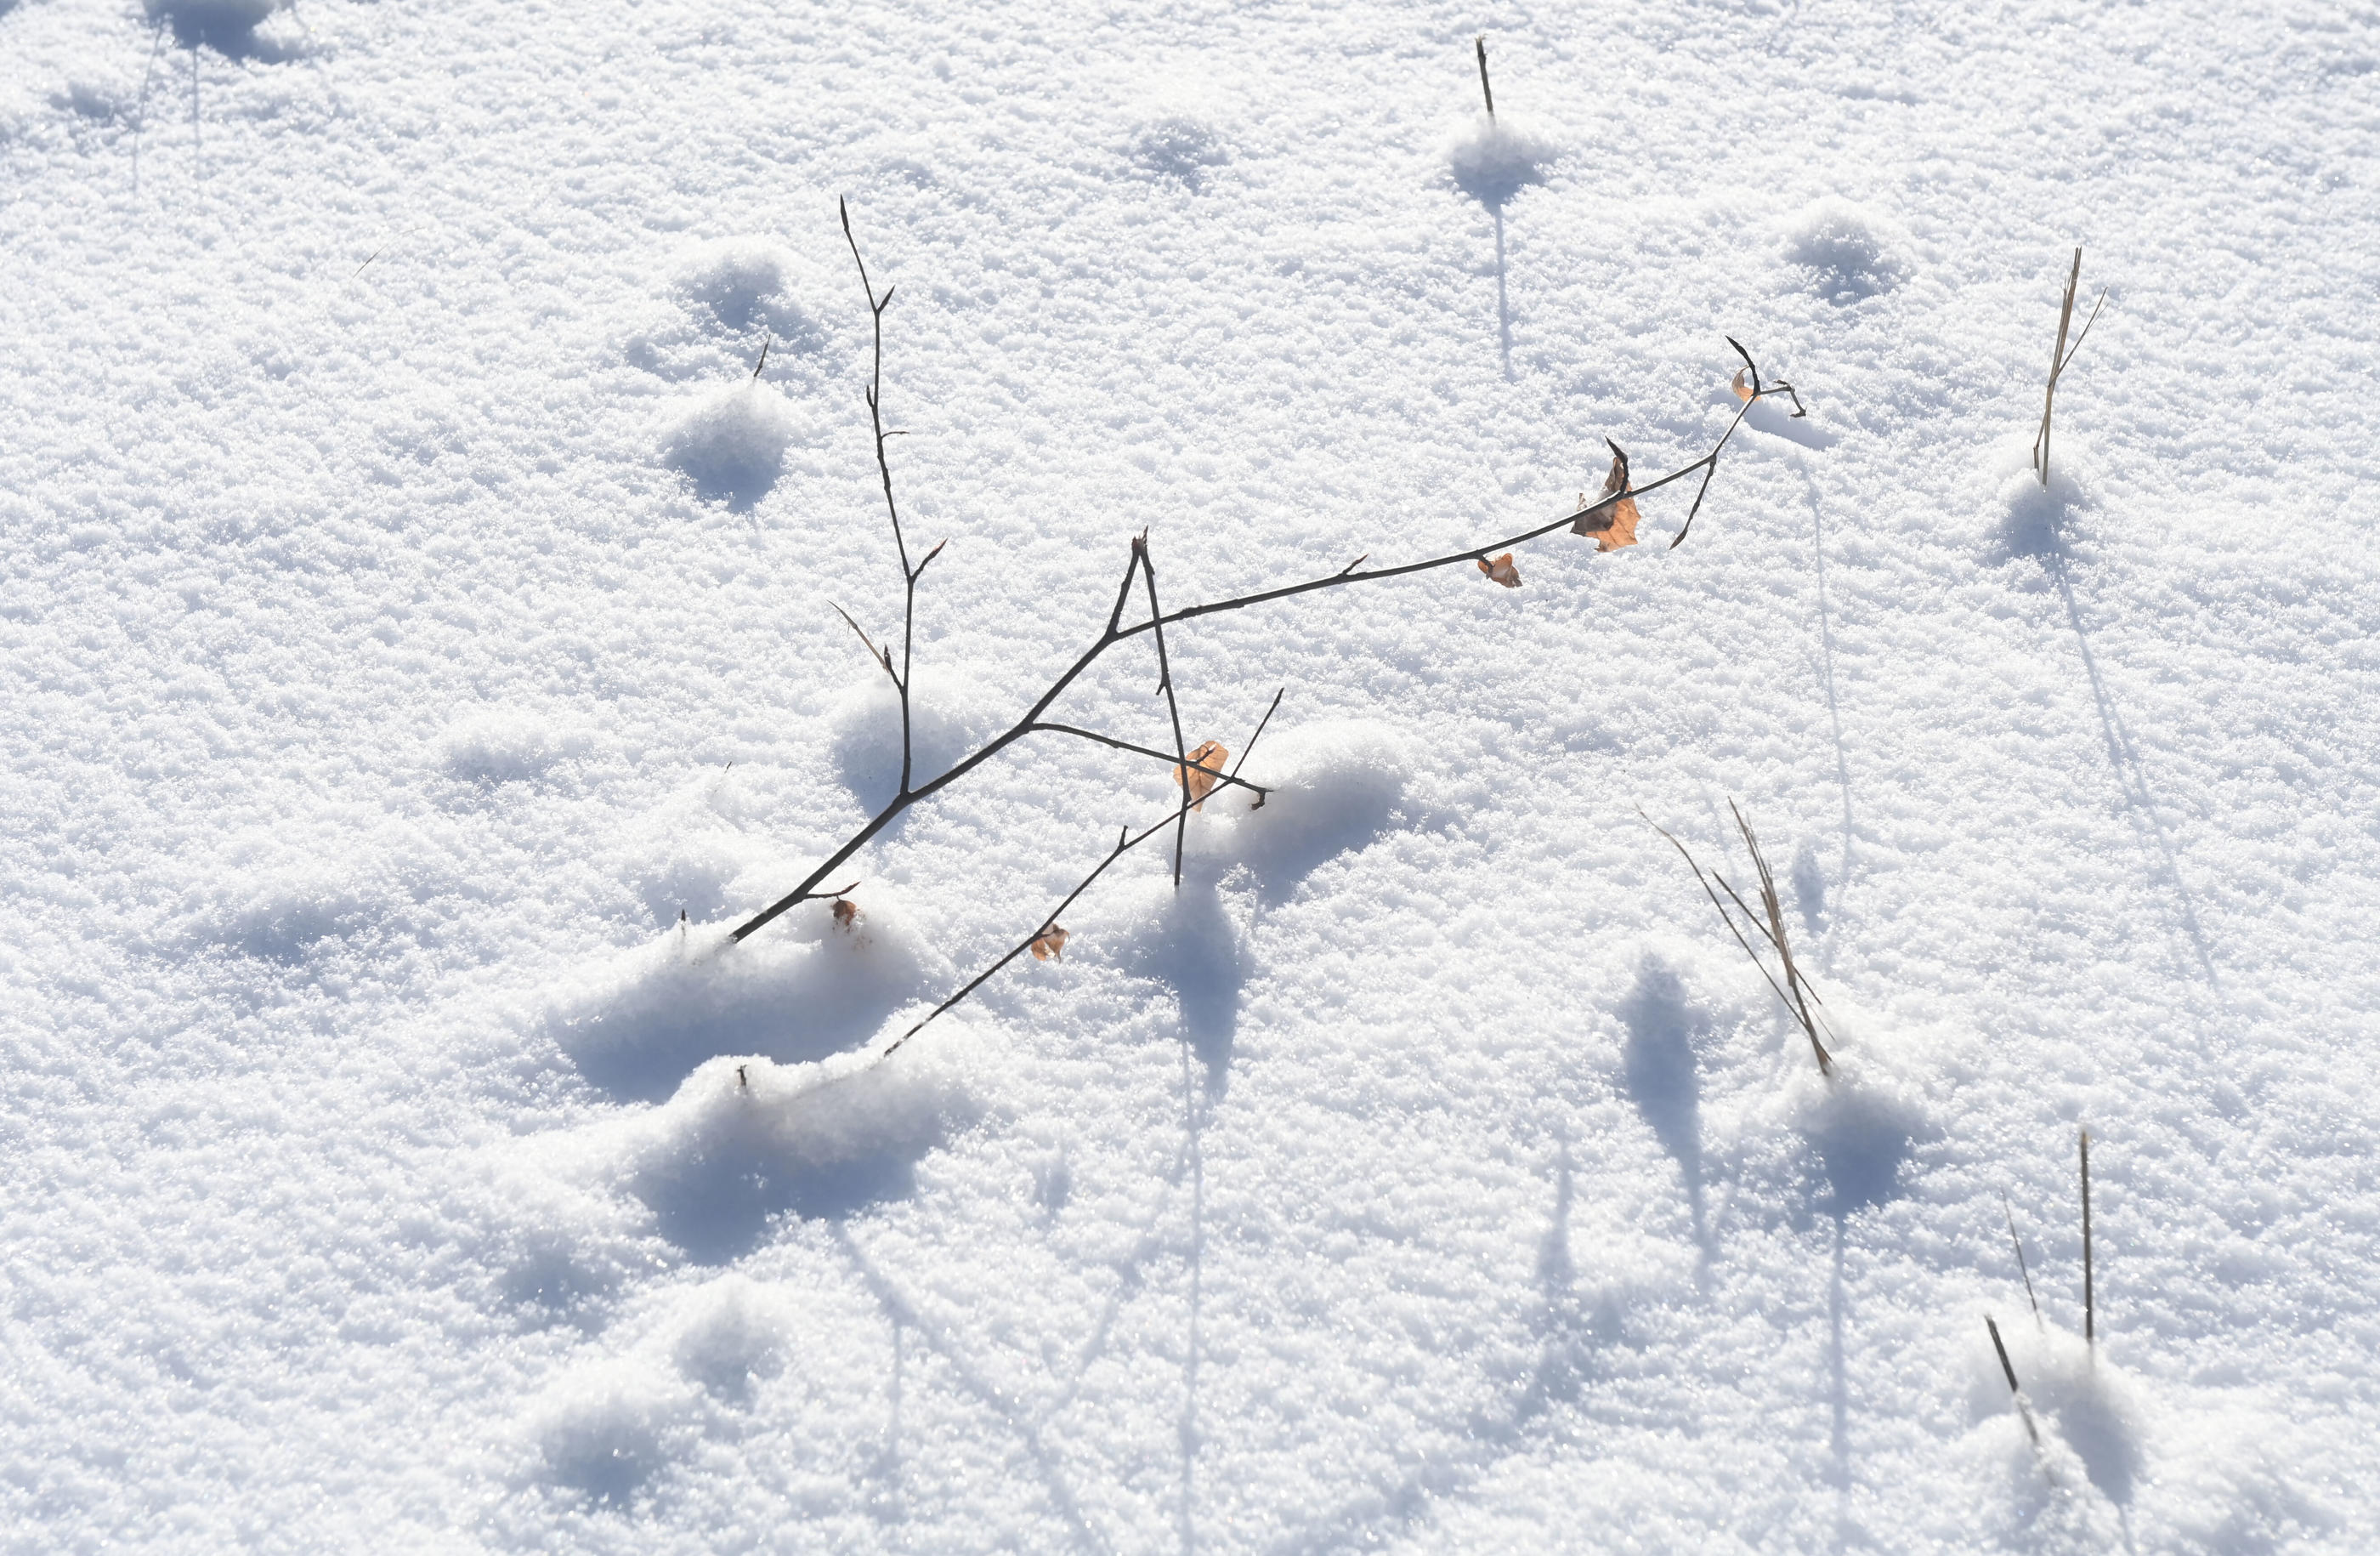 En poudre, mouillée, humide ou fondante... La neige offre différentes textures selon les températures. Icon Sport/Ludek Perina